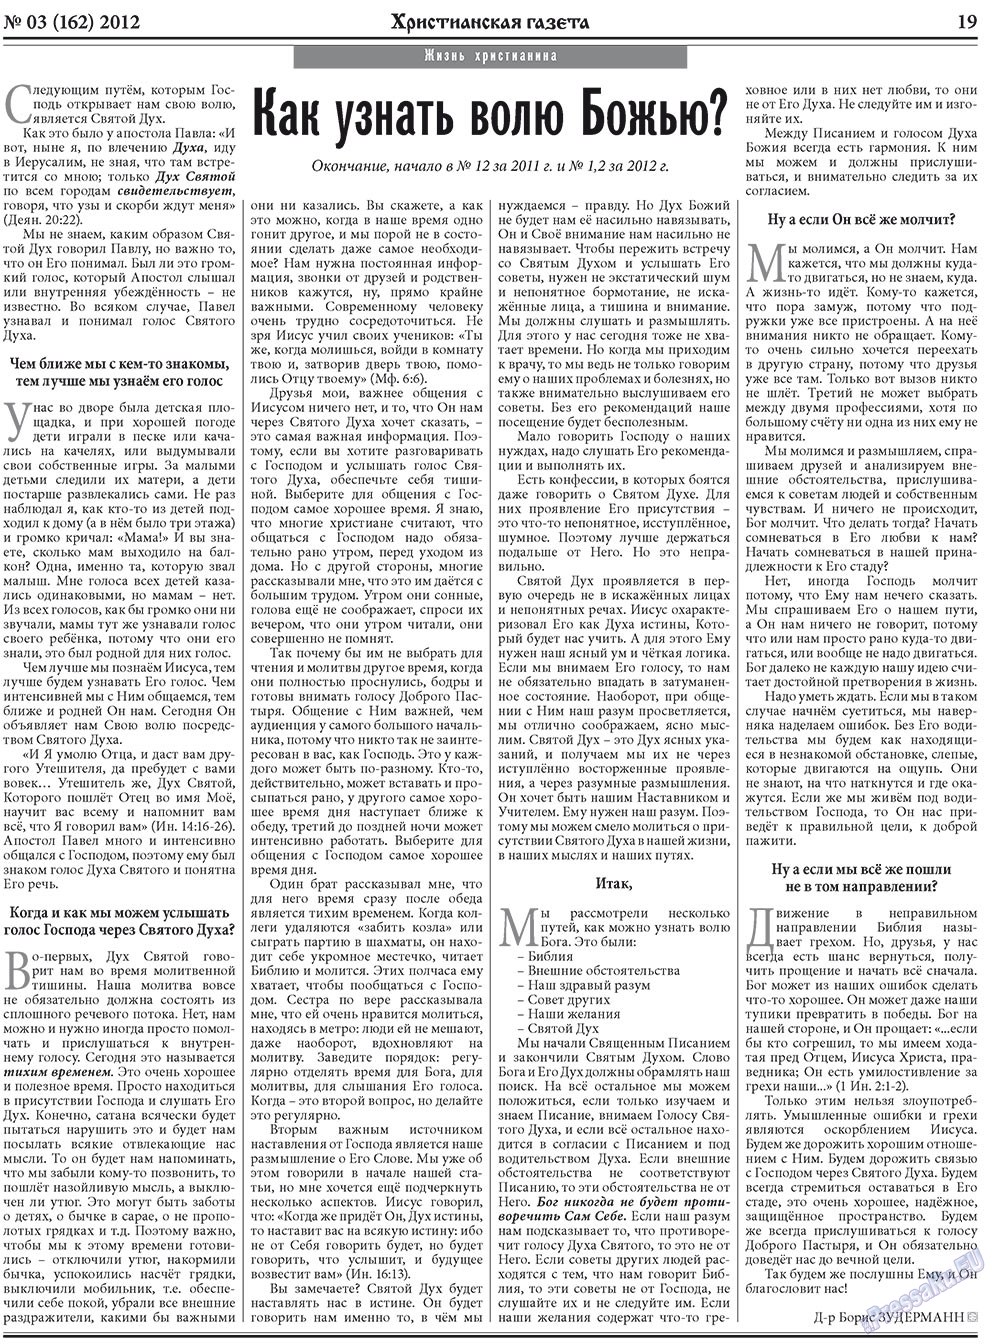 Христианская газета, газета. 2012 №3 стр.27